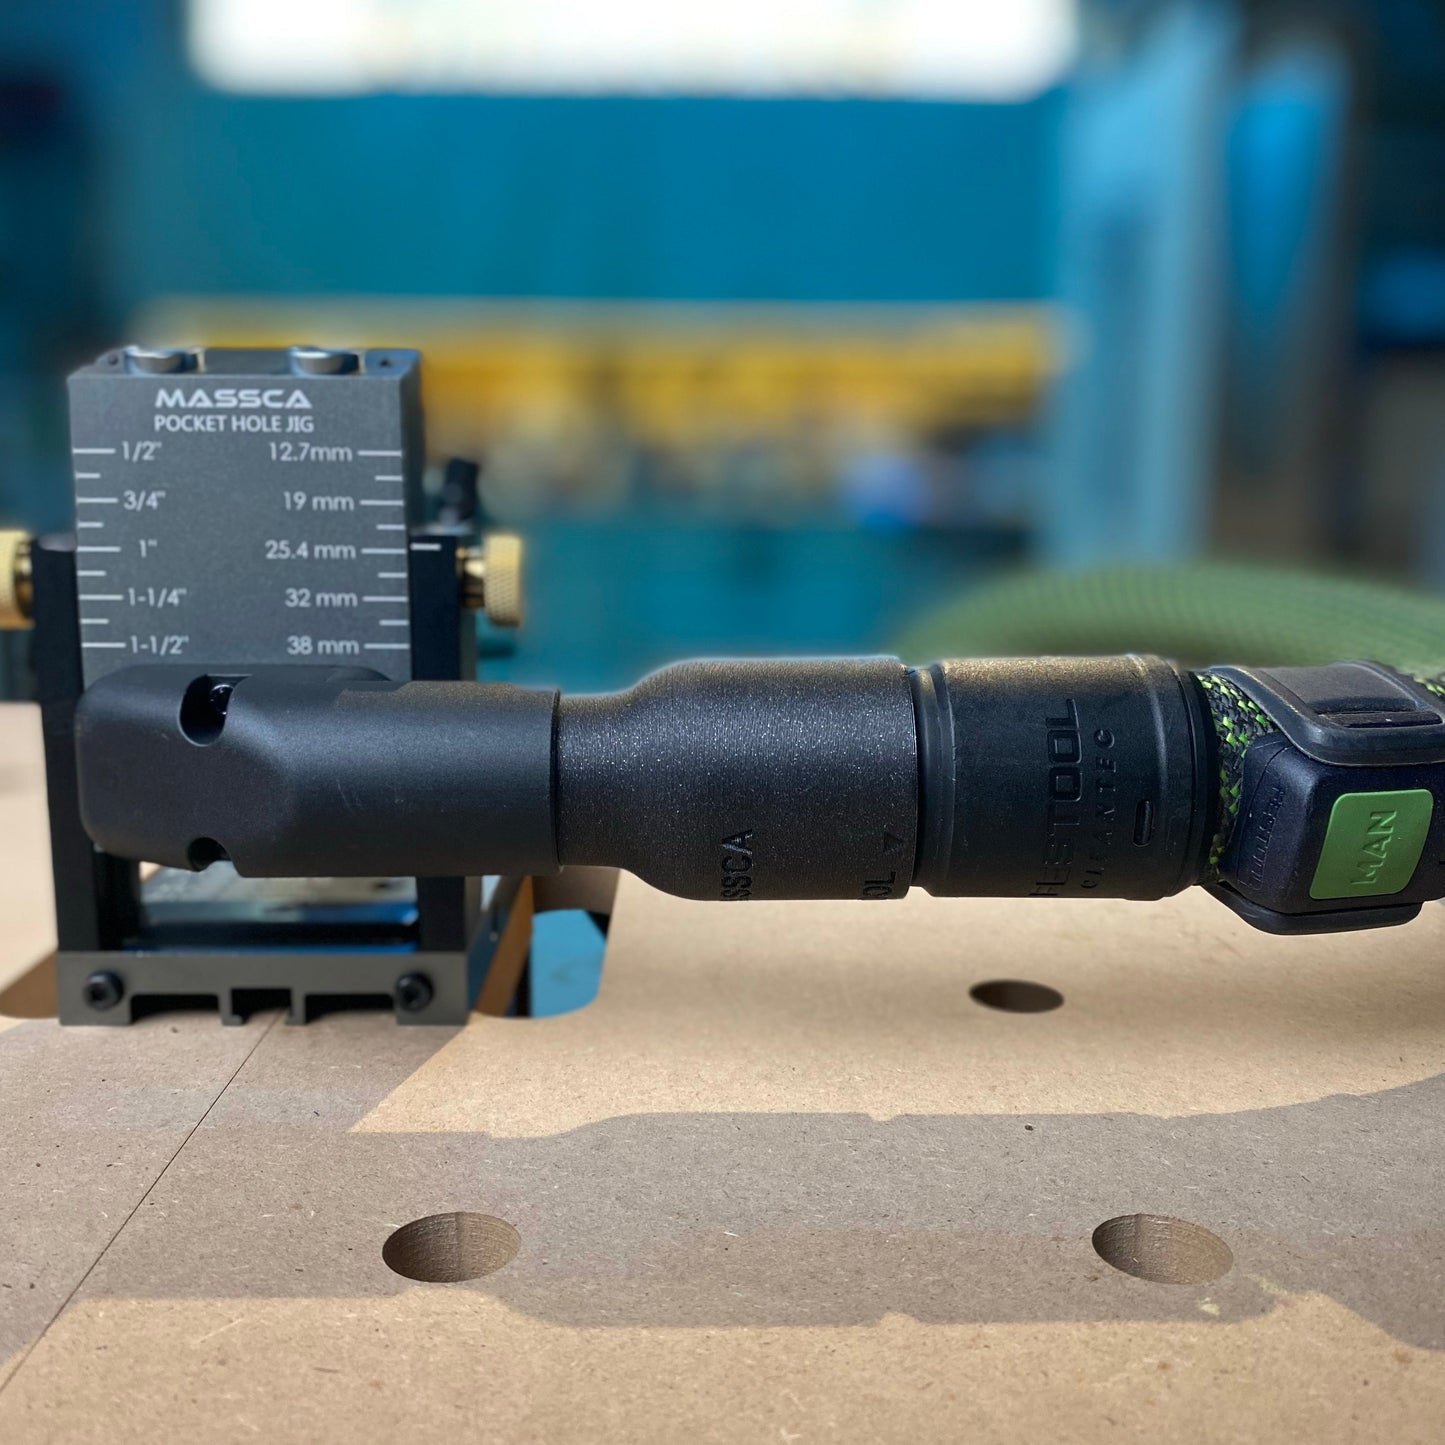 Hose Adaptor for Massca/Festool 27mm Hose Connection